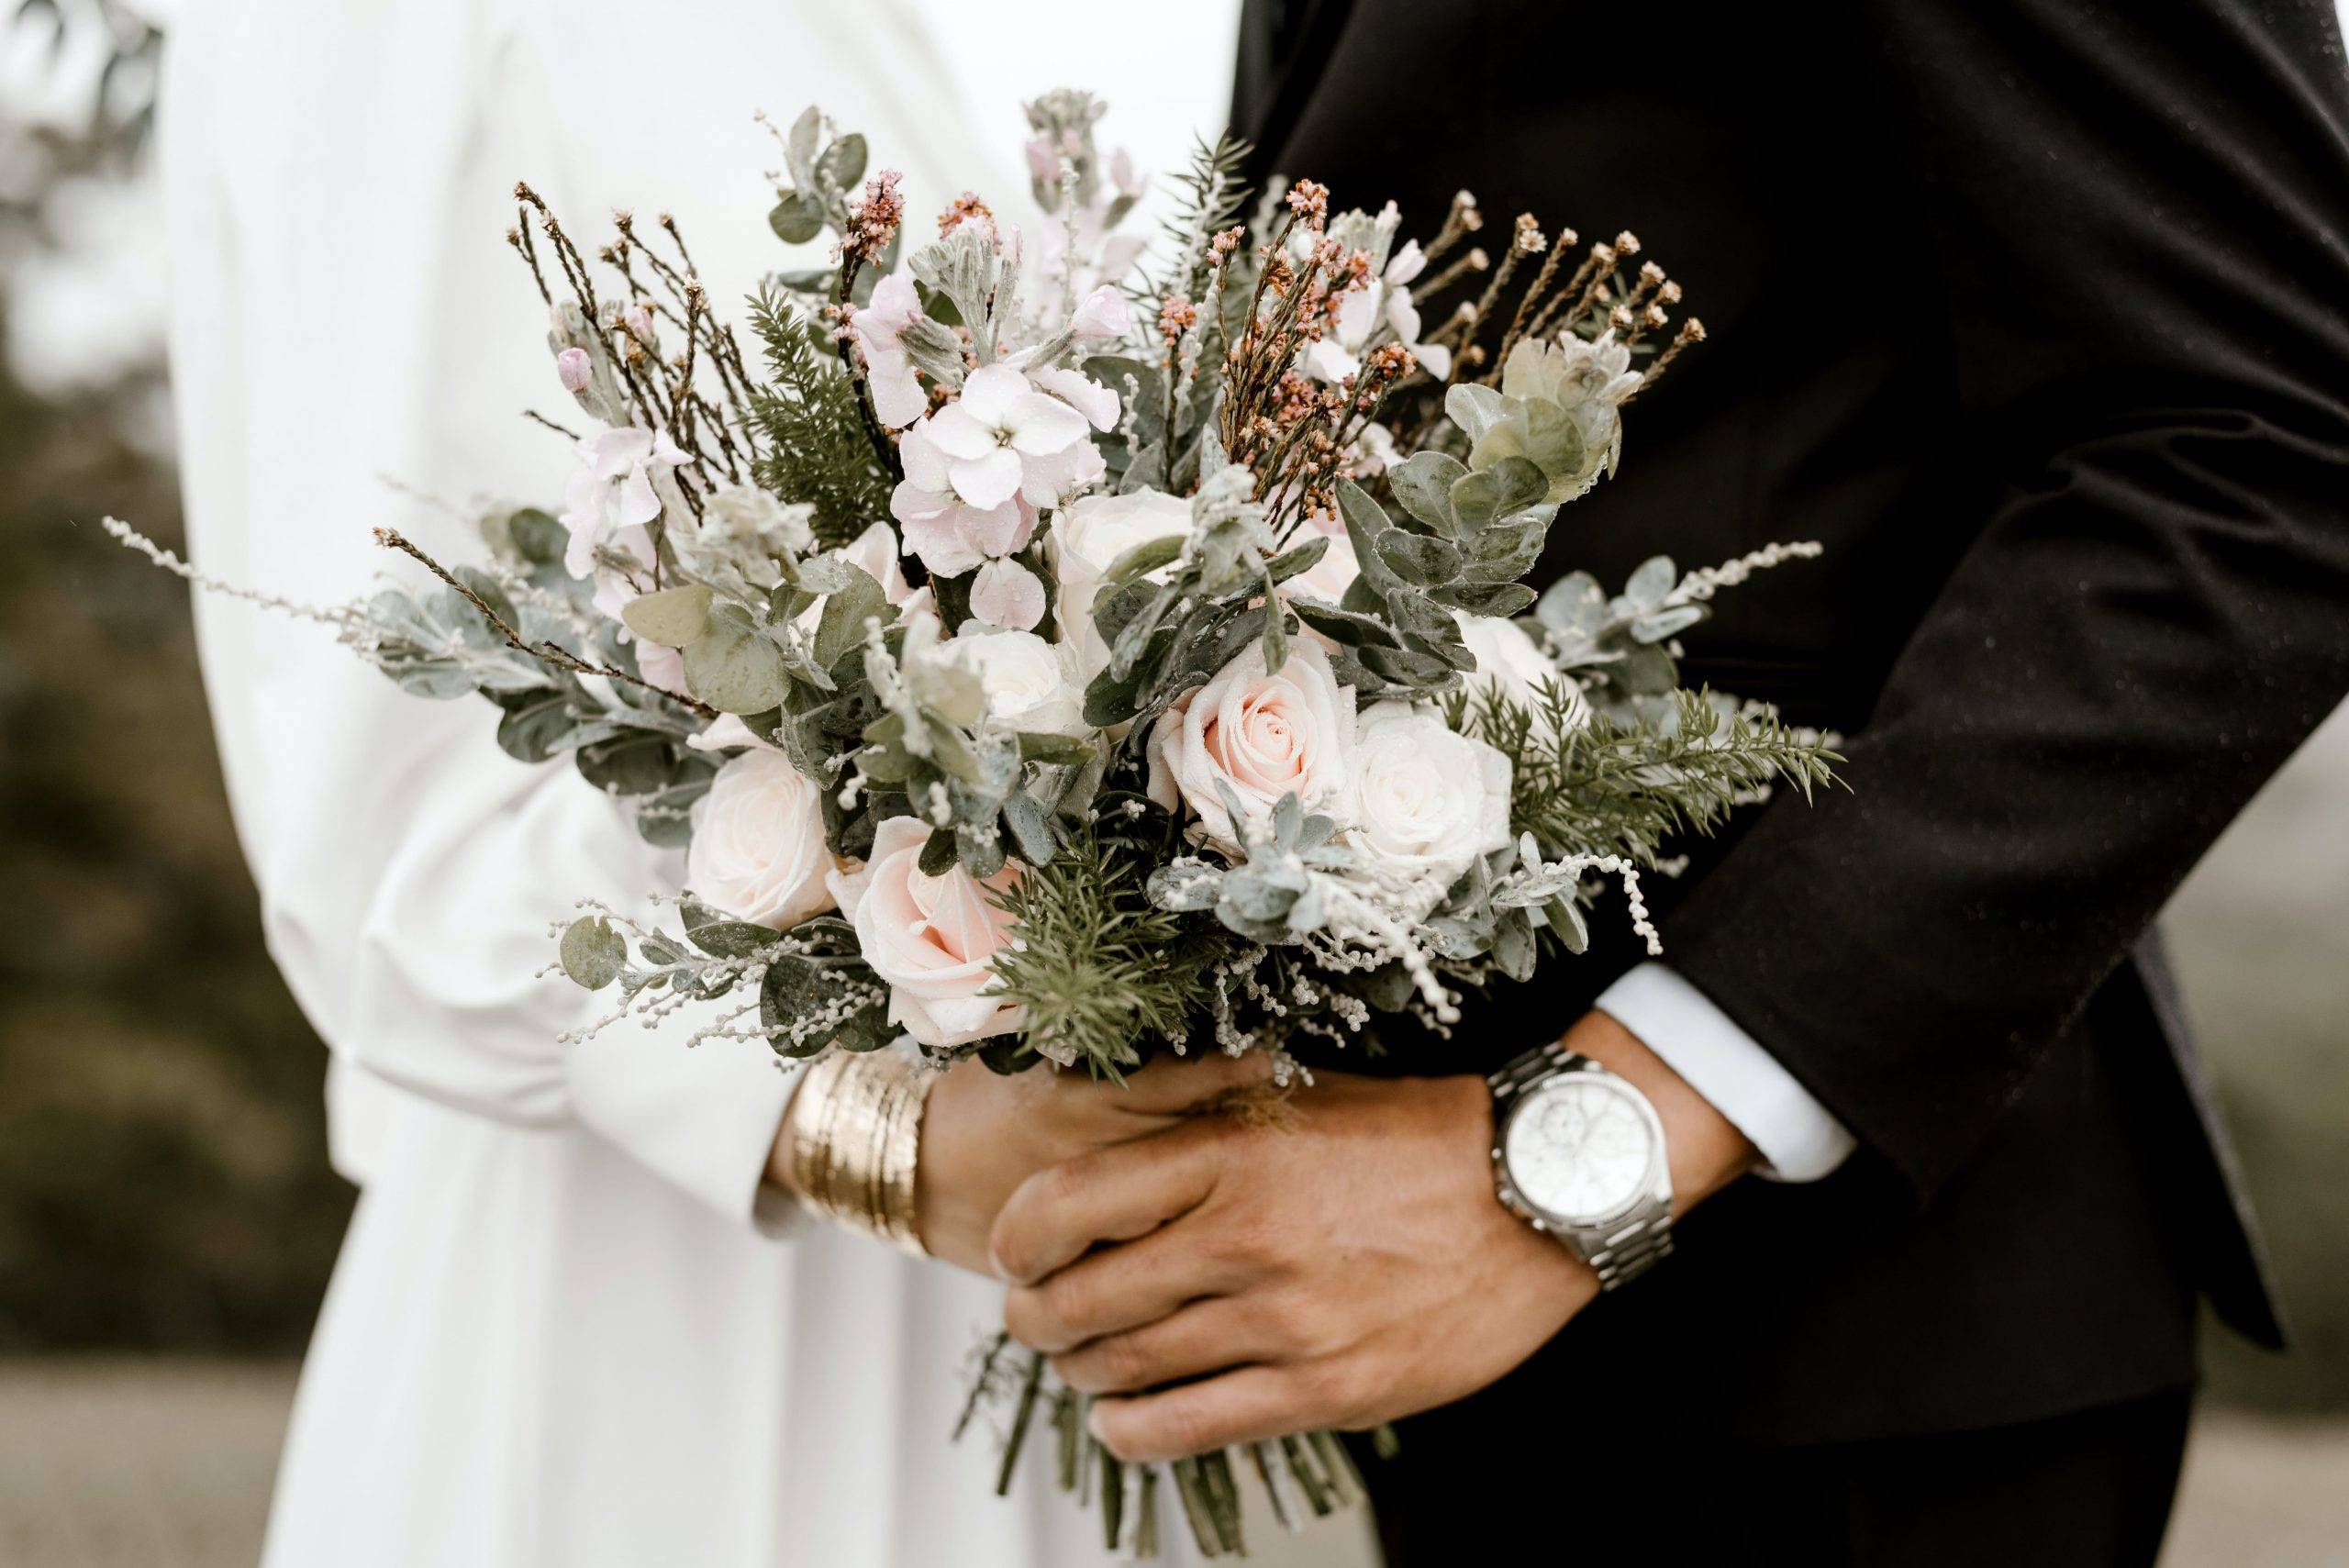 Marriage with Benefits, Pernikahan Demi Mendapatkan Keuntungan